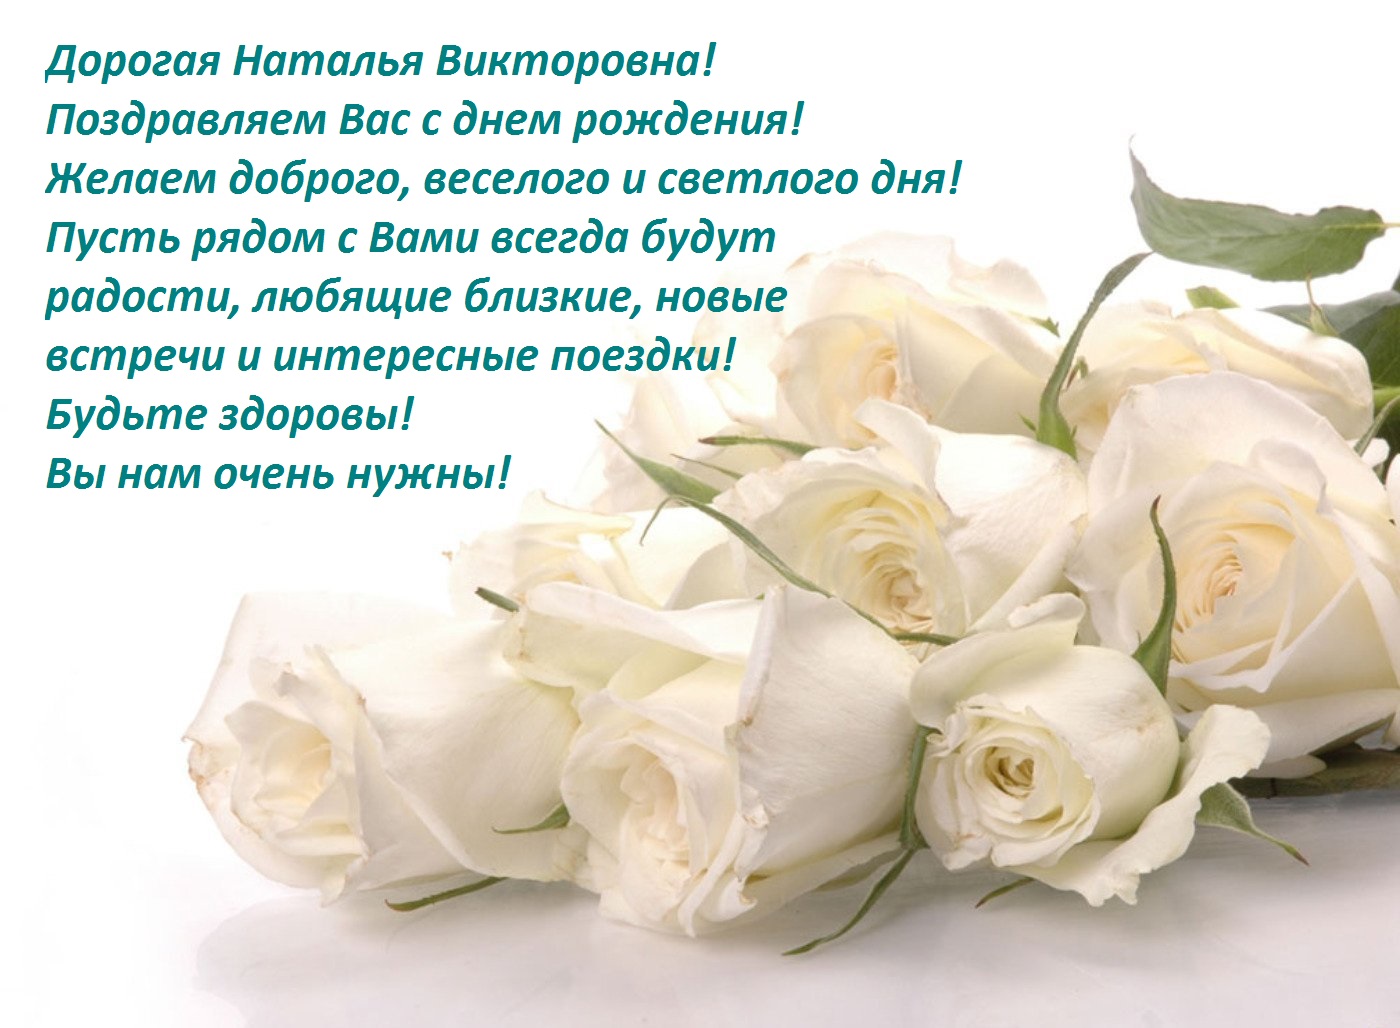 С днём рождения!  Поздравляем дорогую Наталью Викторовну Нечаева, члена Совета нашей Школы с днём рождения!